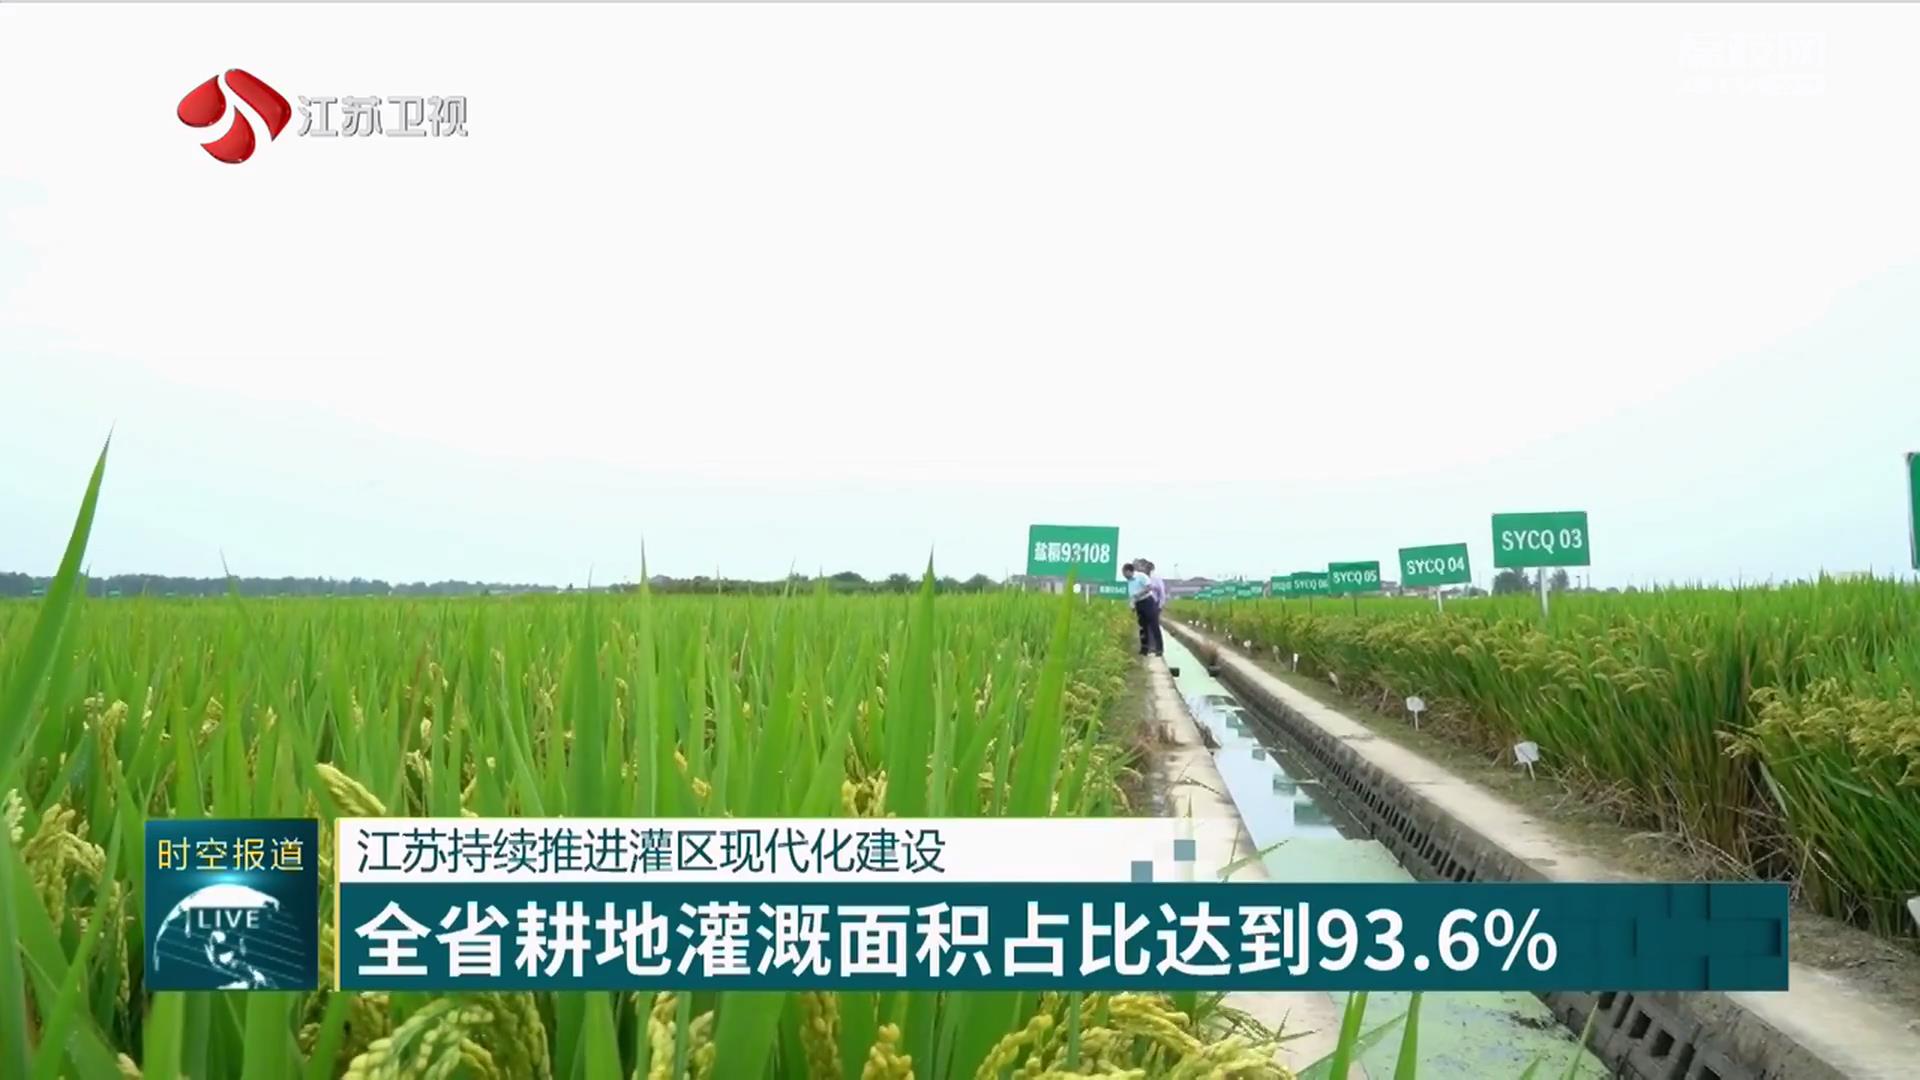 江苏持续推进灌区现代化建设 全省耕地灌溉面积占比达到93.6%